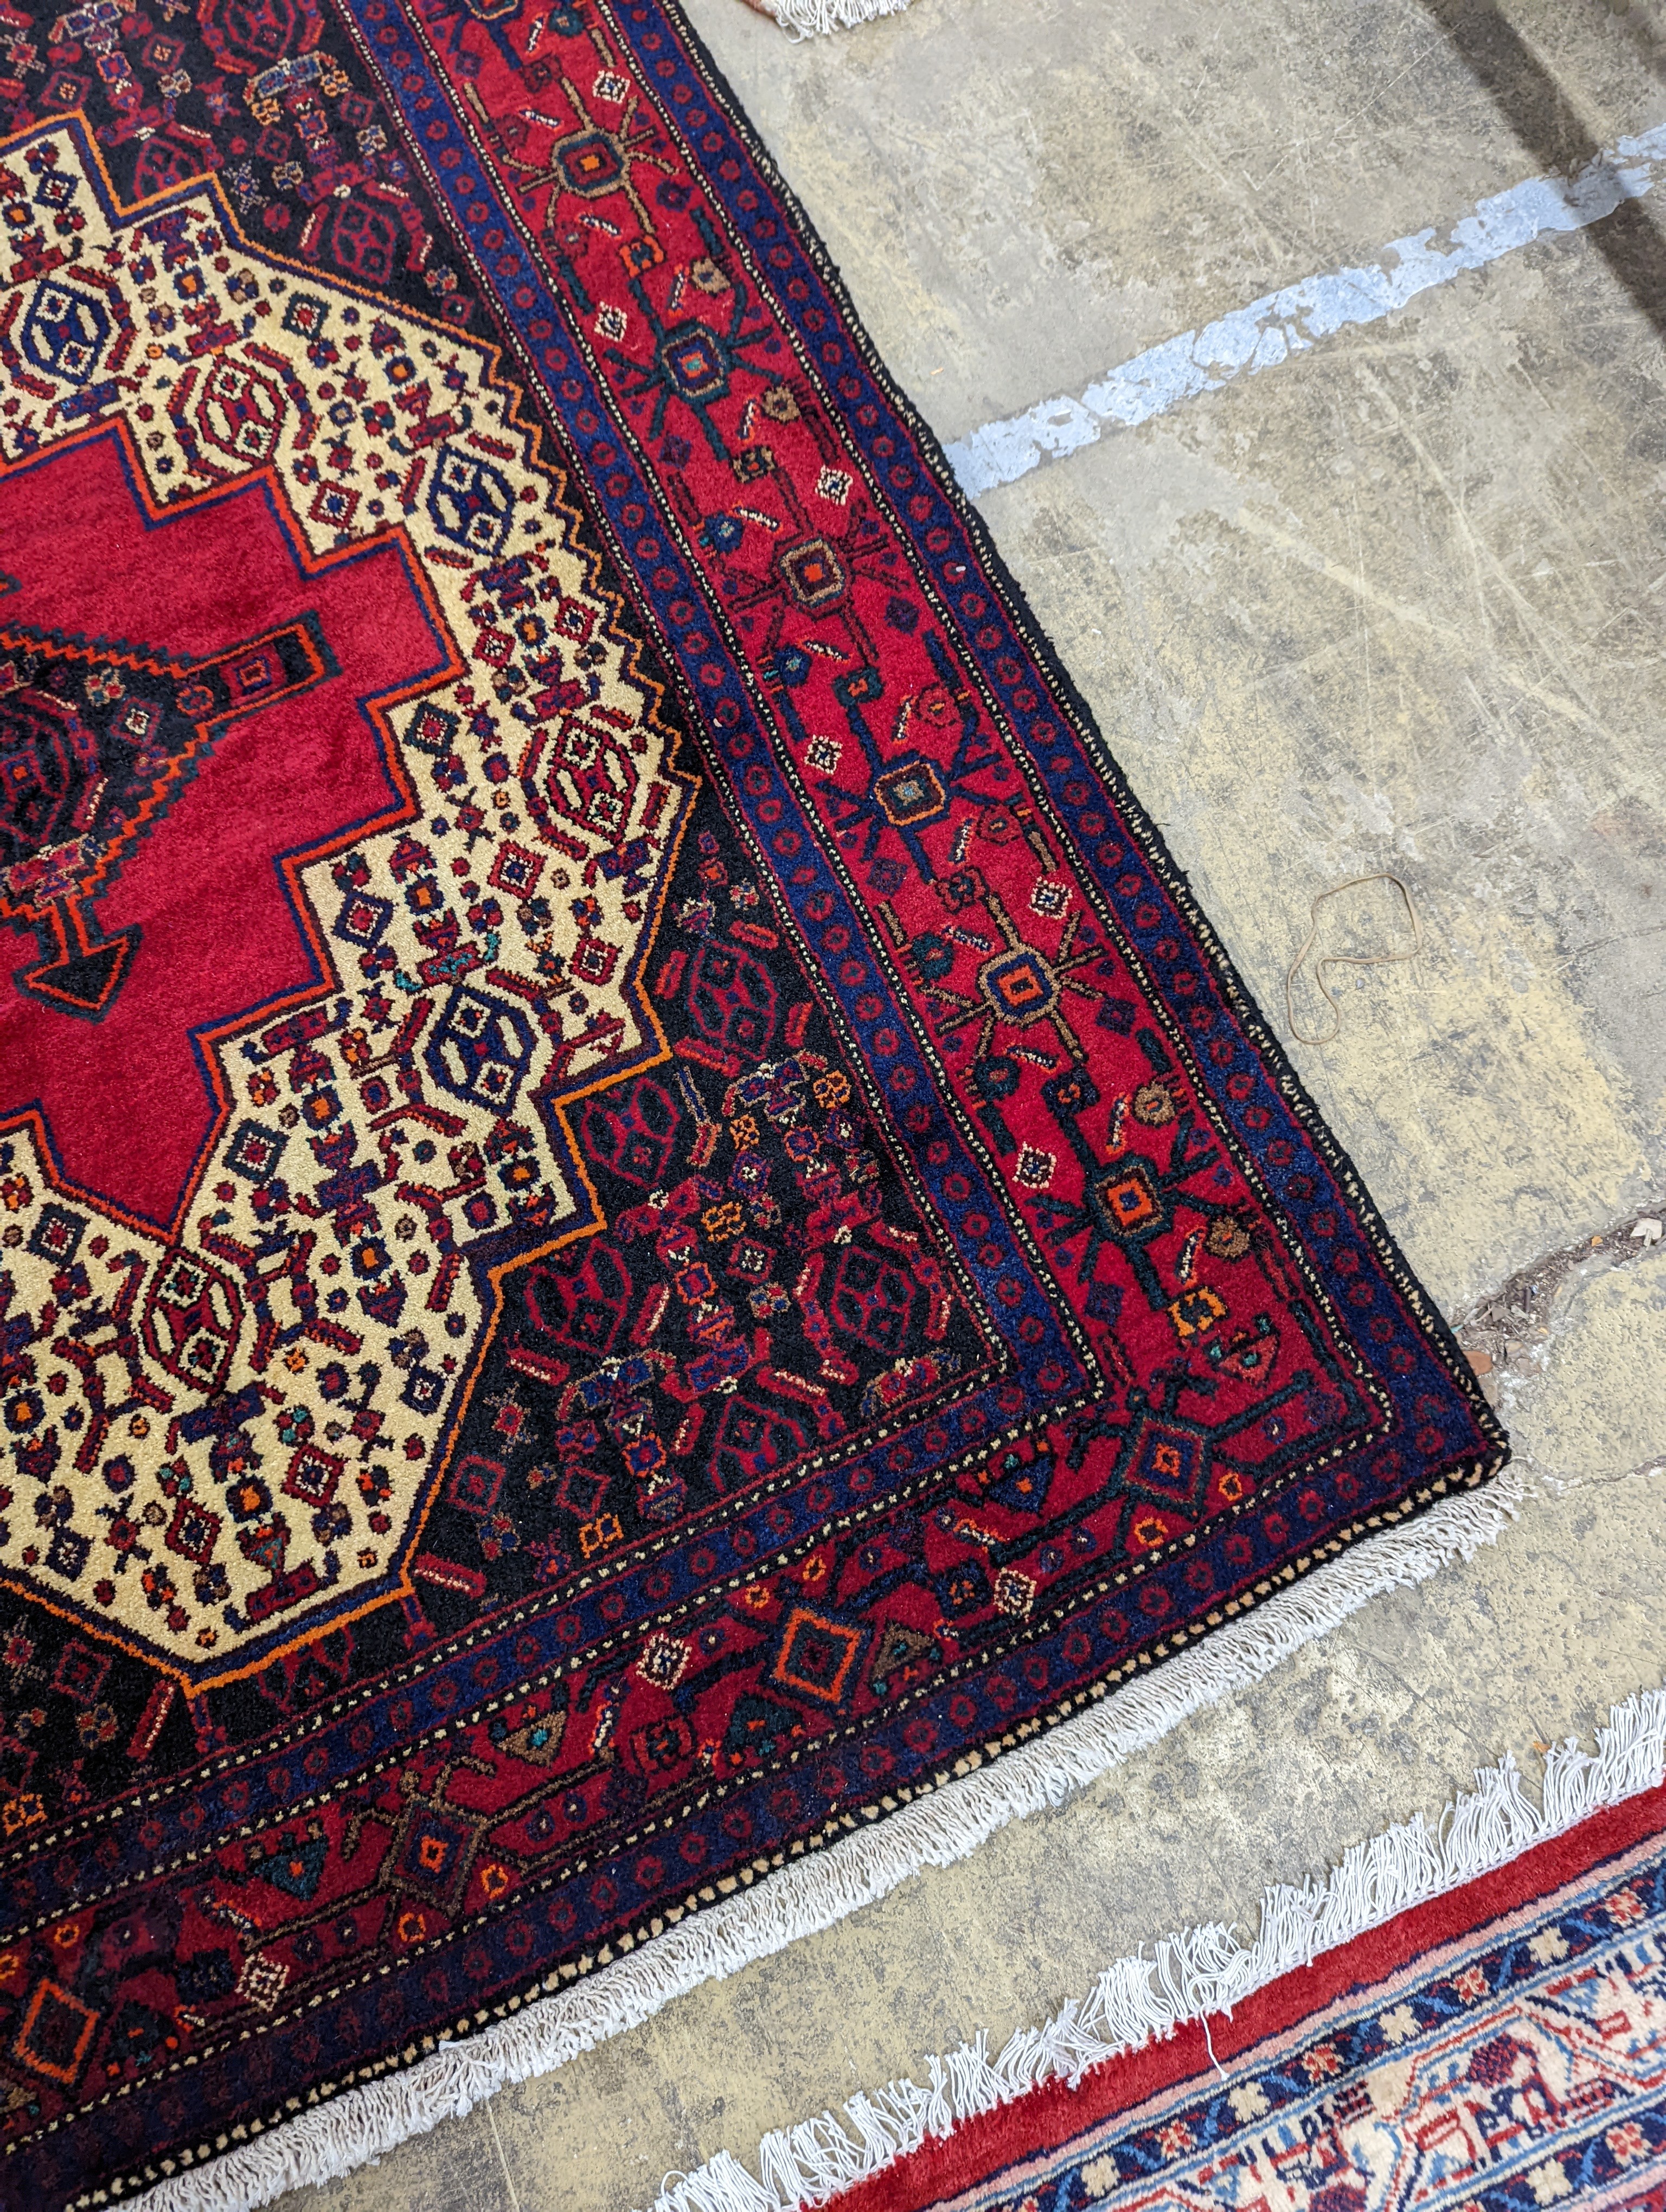 A Shiraz rug, 150 x 120cm